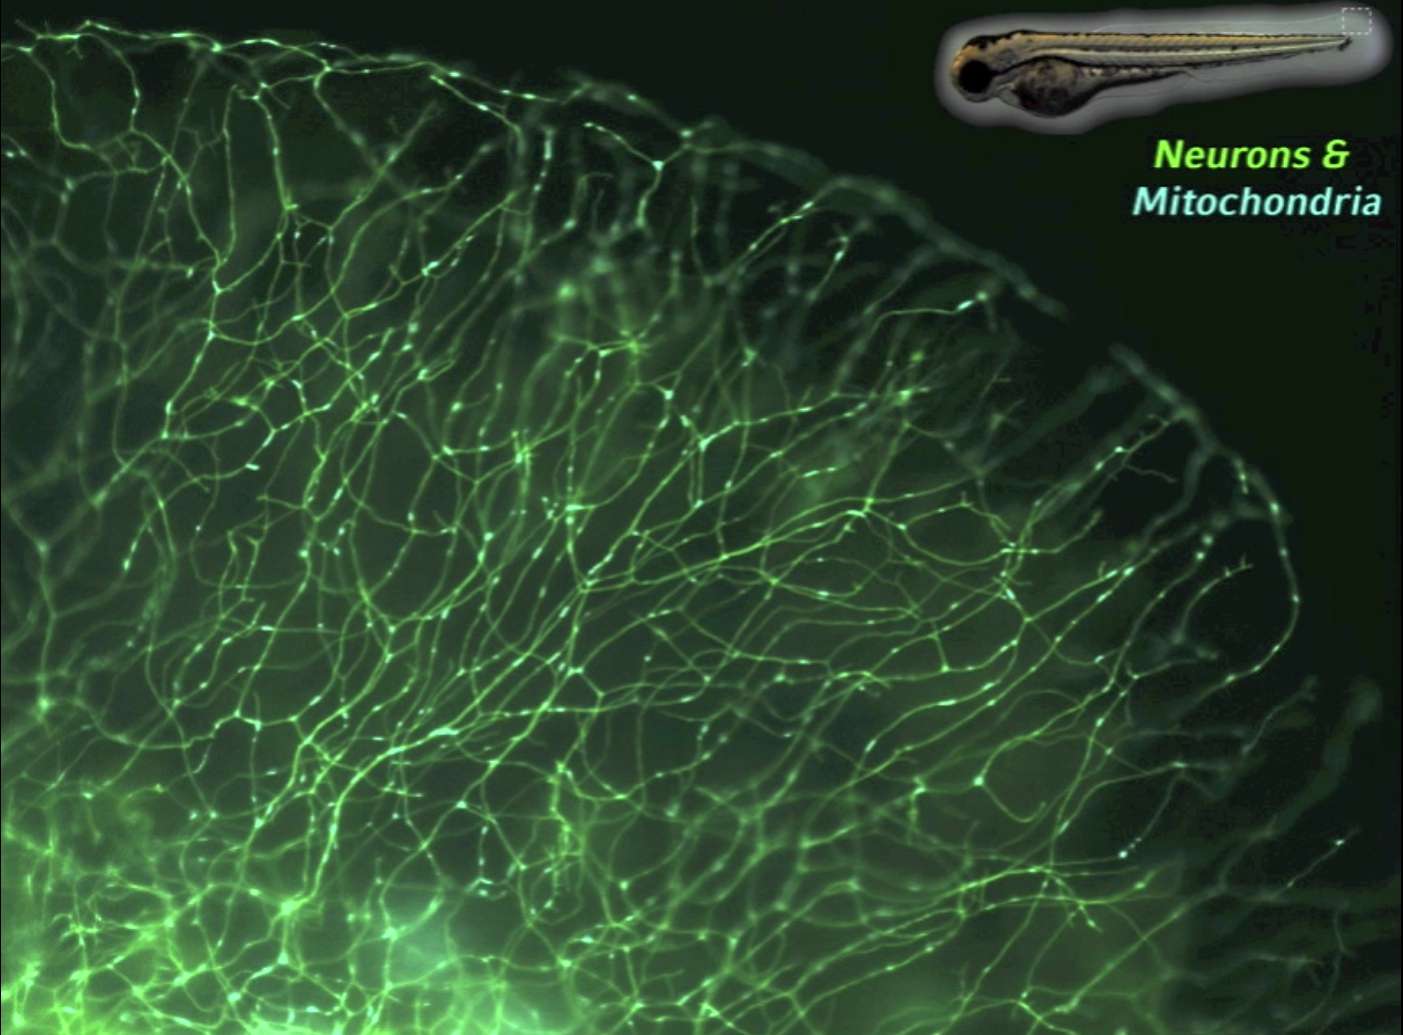 Des techniques utilisant la fluorescence ont été utilisées pour suivre des mitochondries à l'intérieur de neurones sensoriels. Ces cellules transmettent des informations en direction du cerveau. Dans le cas présent, les observations ont été faites au niveau de la queue d'une larve de poisson-zèbre. © Dominik Paquet, université de Rockefeller et Centre allemand des maladies neurodégénératives